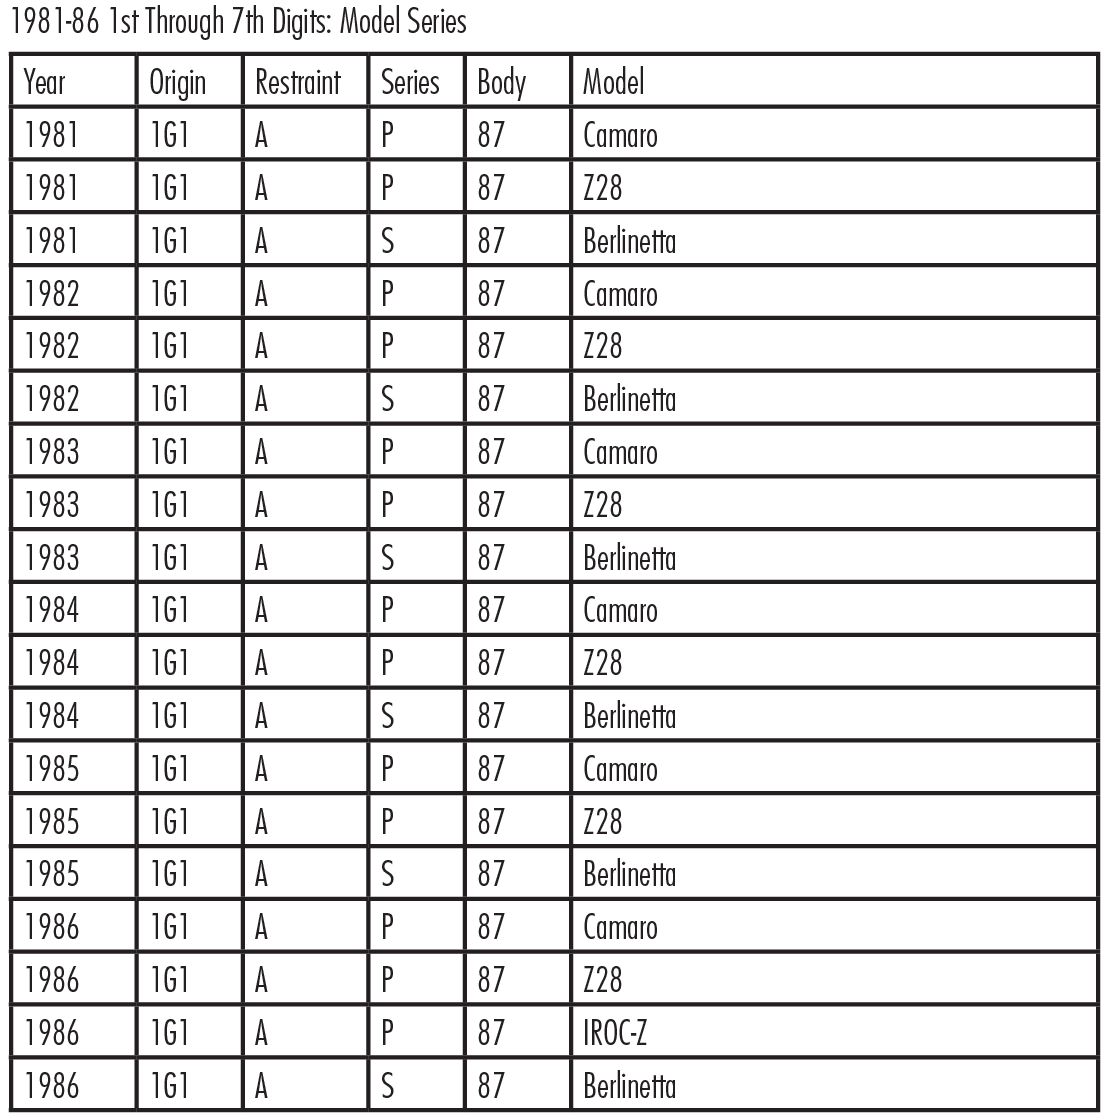 Chevy Vin Decoder Chart